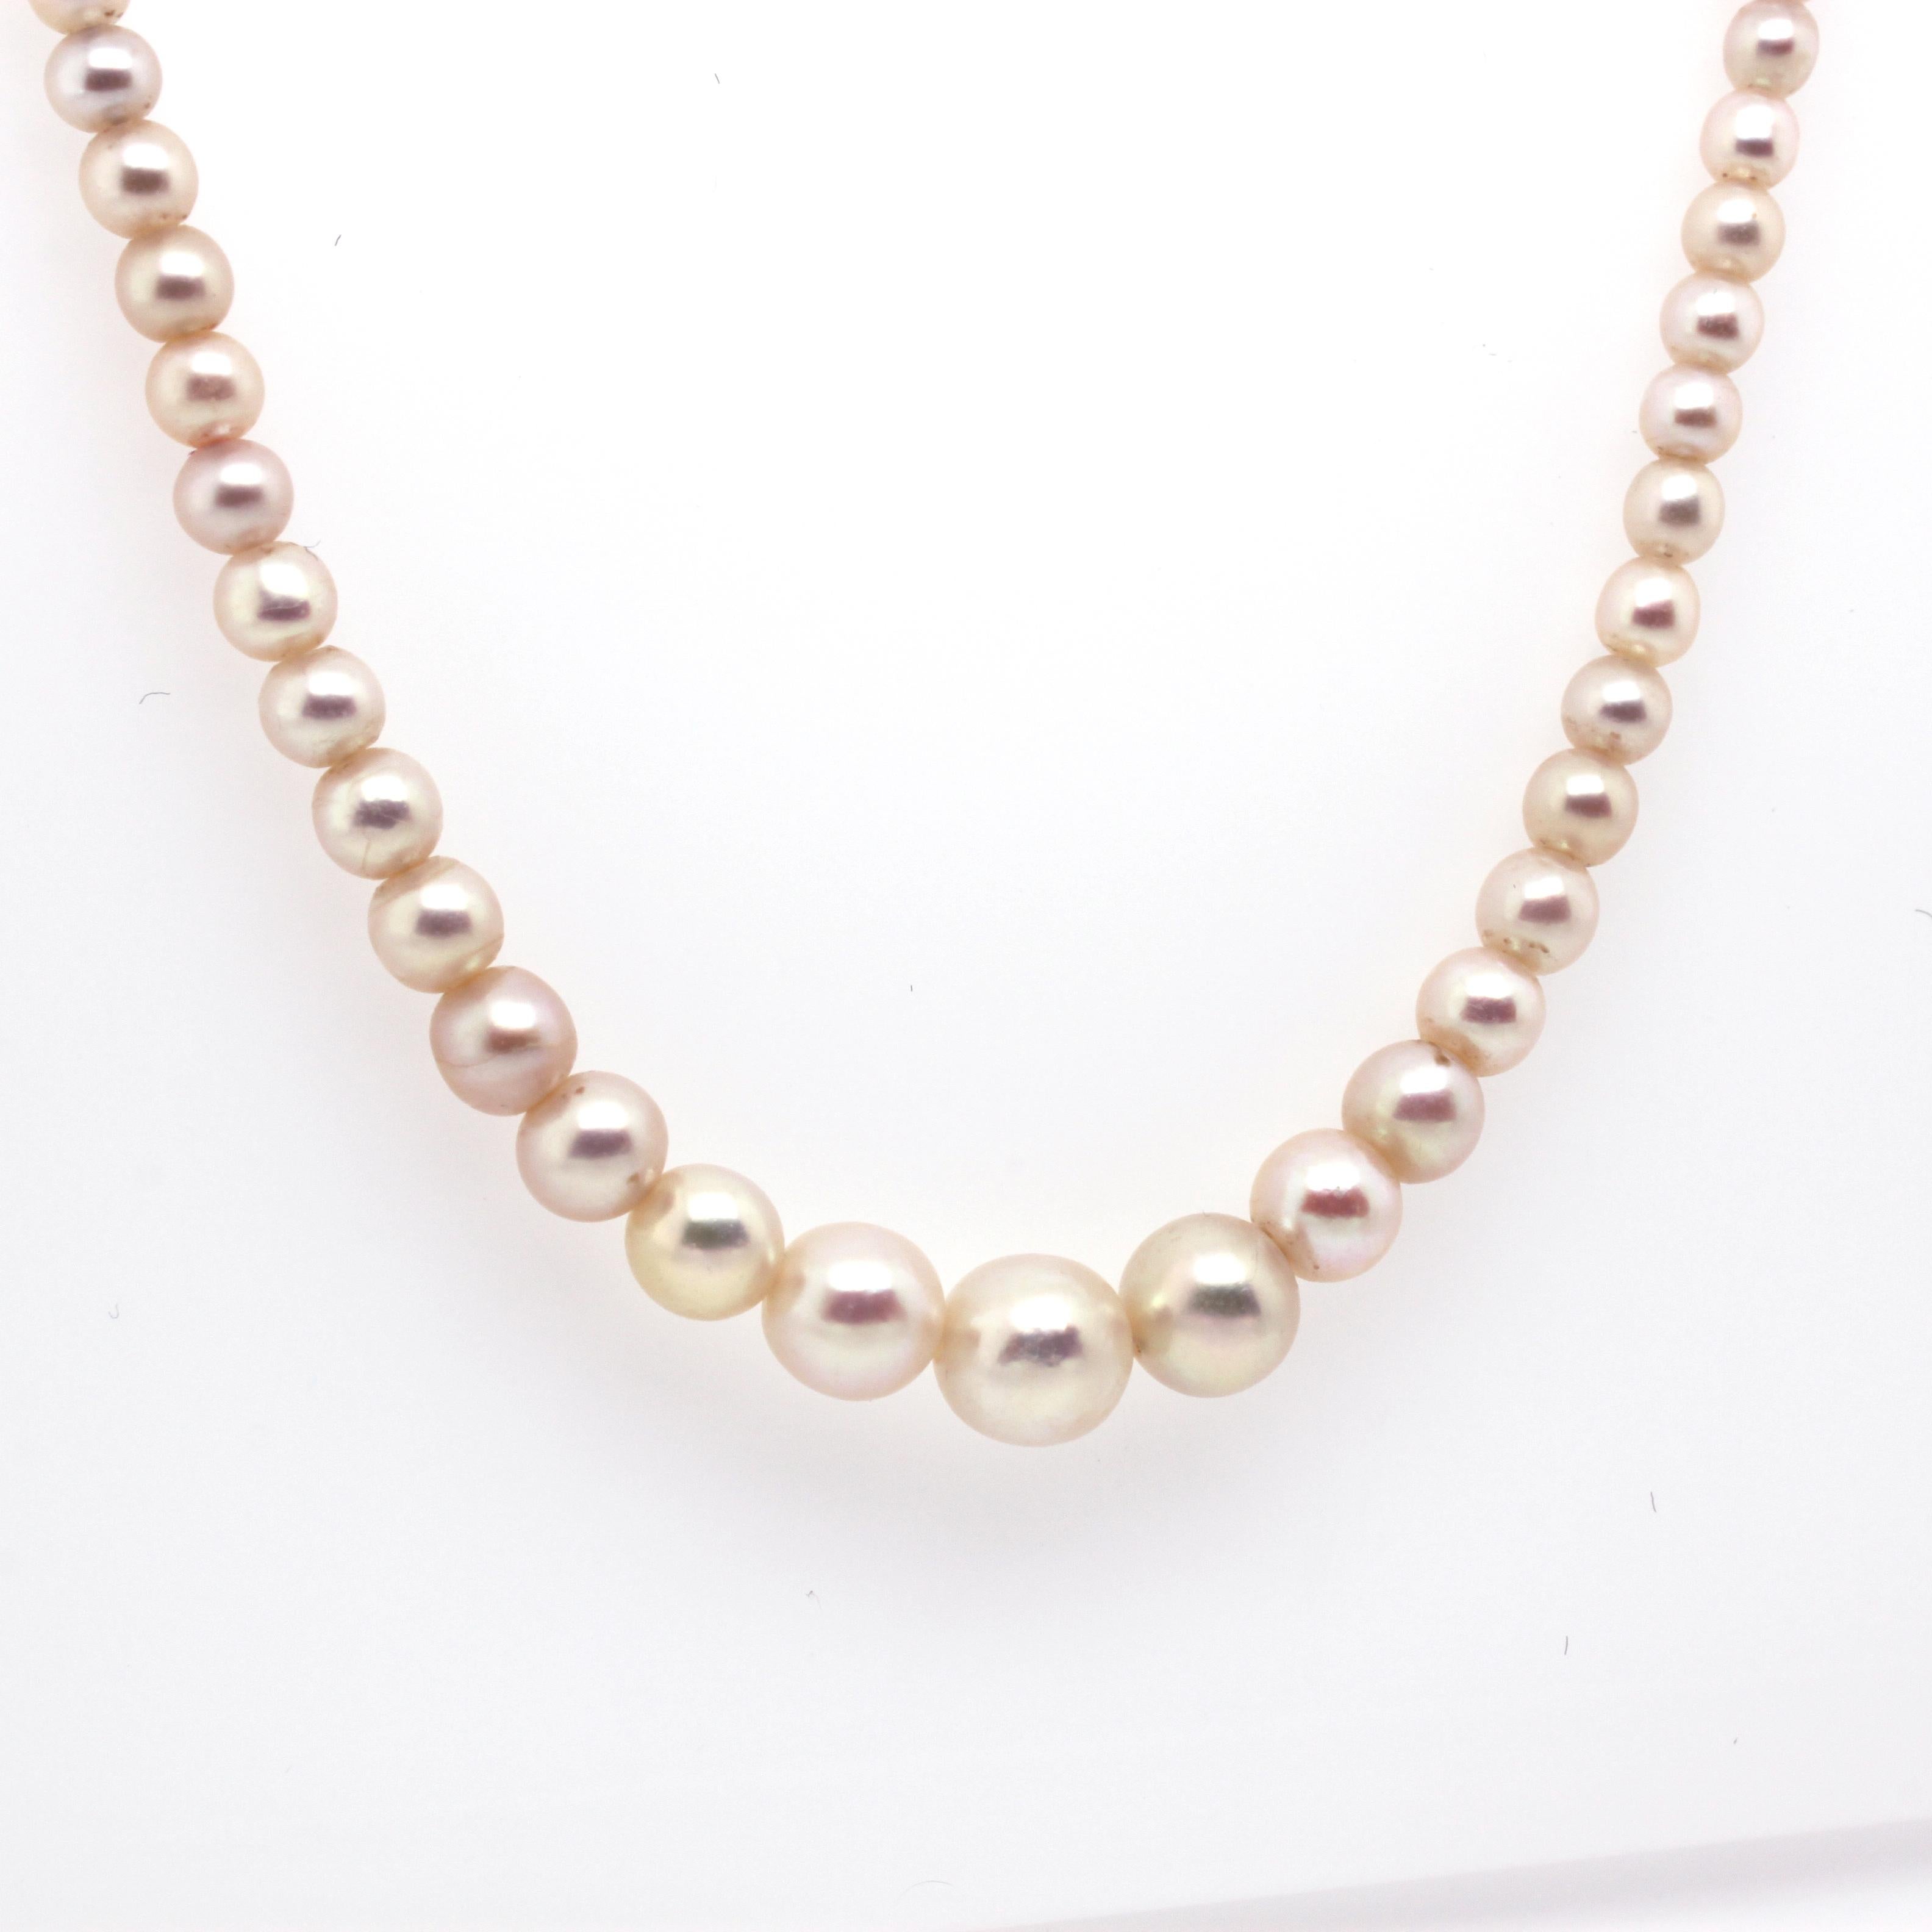 basra pearls price